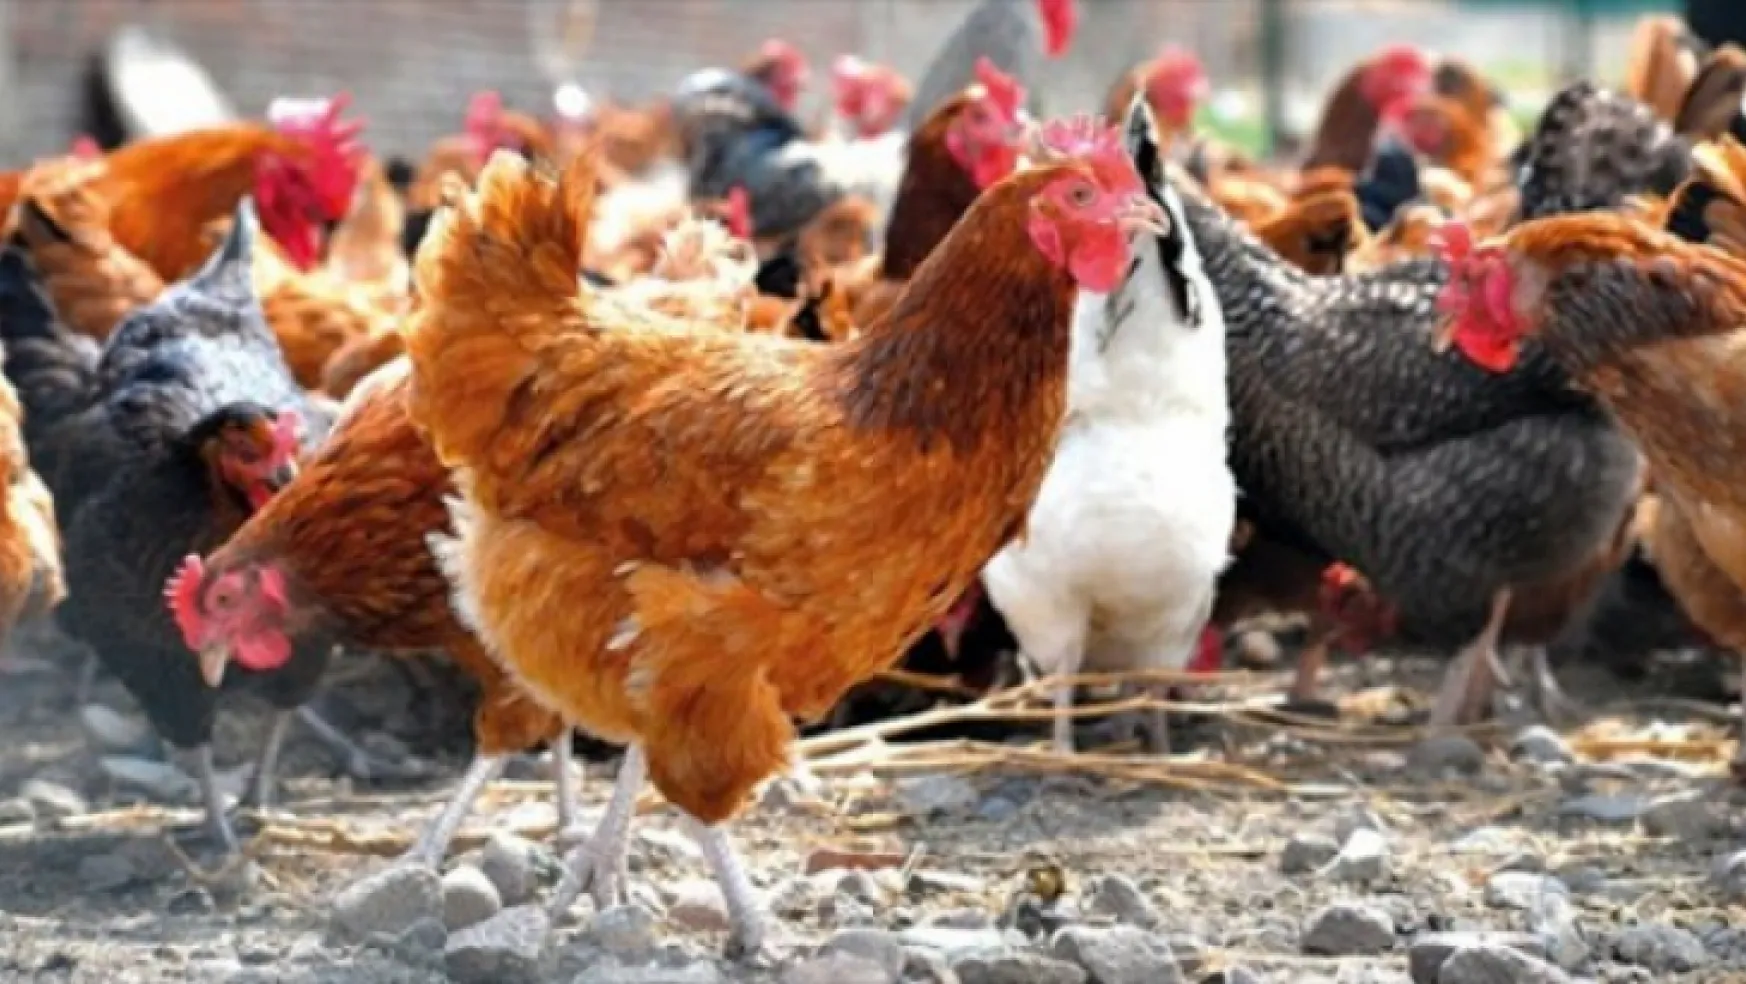 Tavuk eti üretimi 200 bin 77 ton, tavuk yumurtası üretimi 1,74 milyar adet olarak gerçekleşti